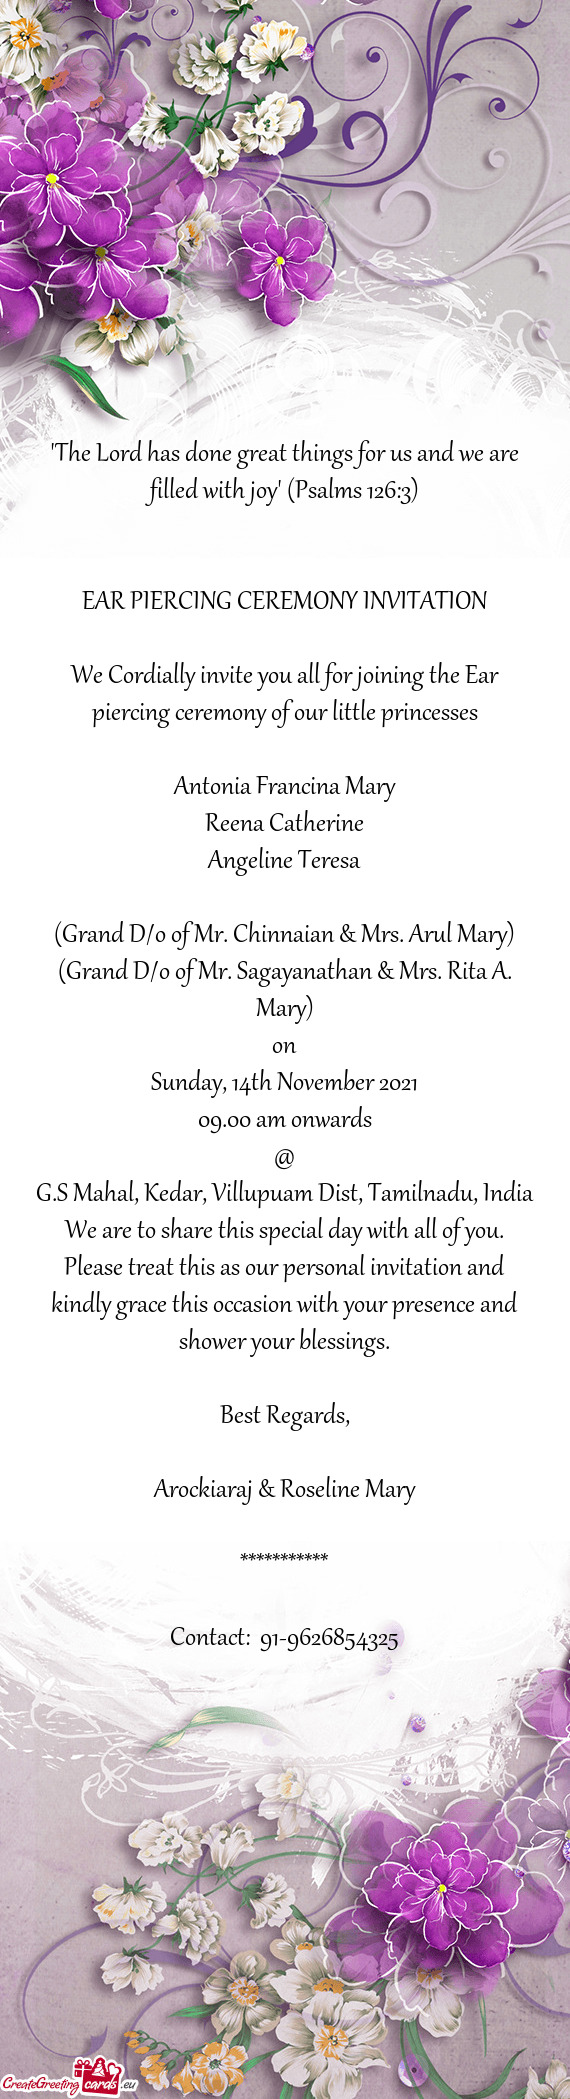 (Grand D/o of Mr. Sagayanathan & Mrs. Rita A. Mary)